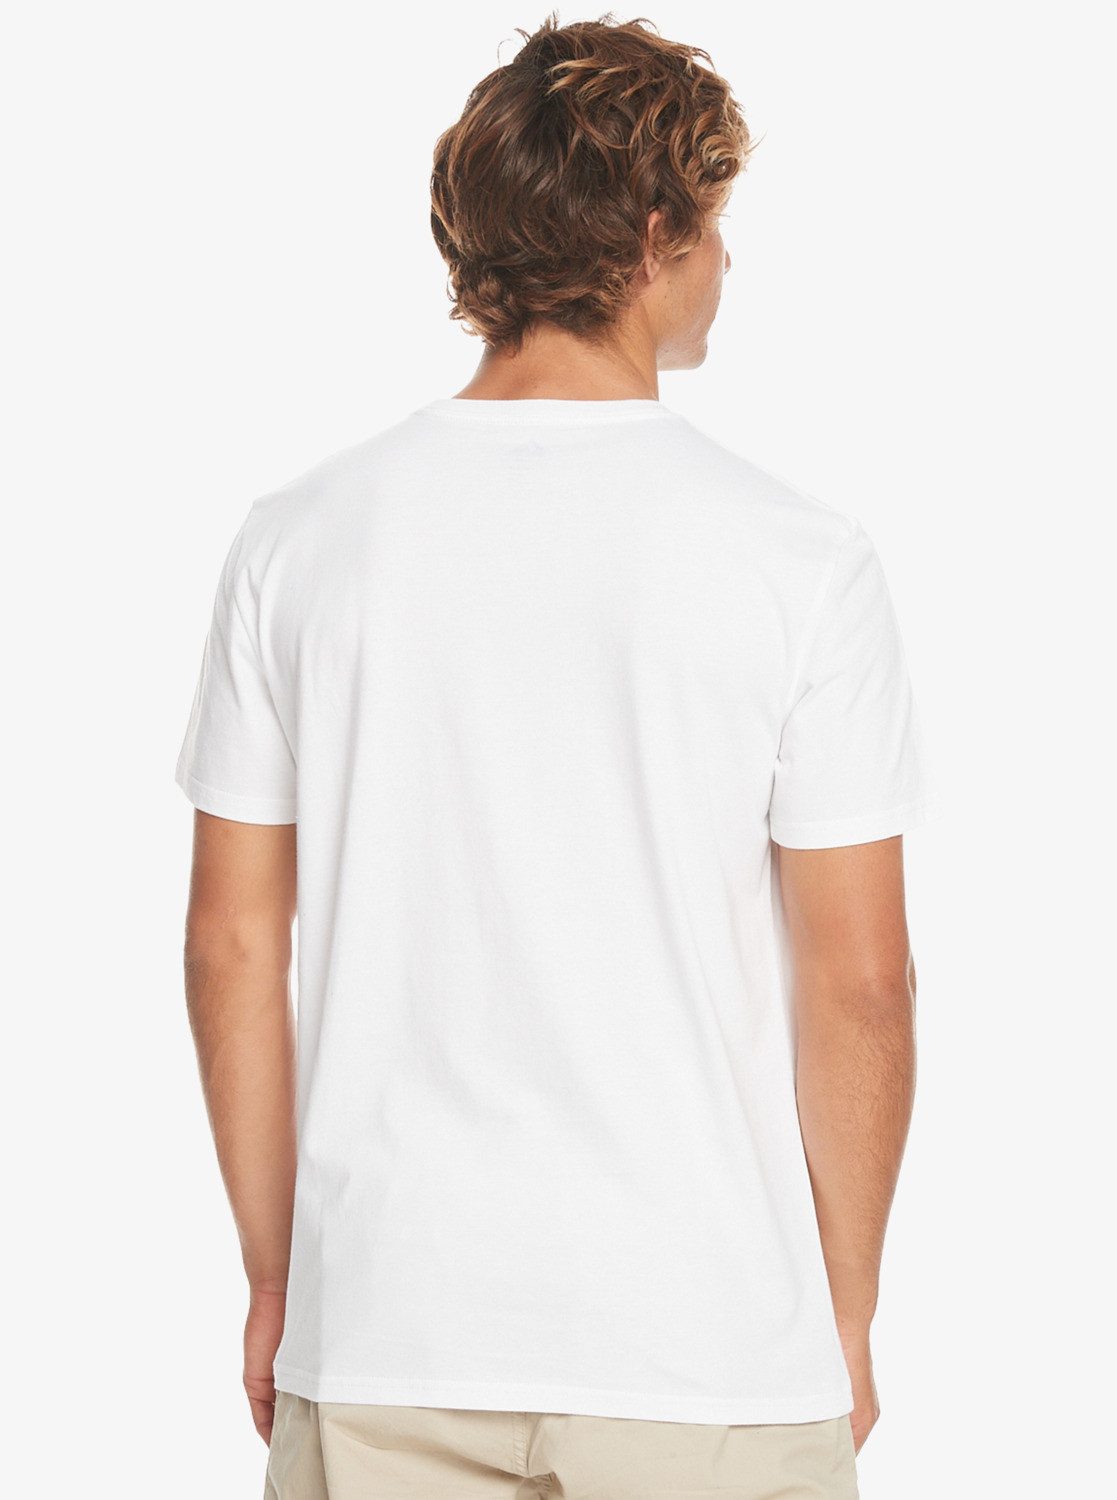 Quiksilver Line T-Shirt White Gradient